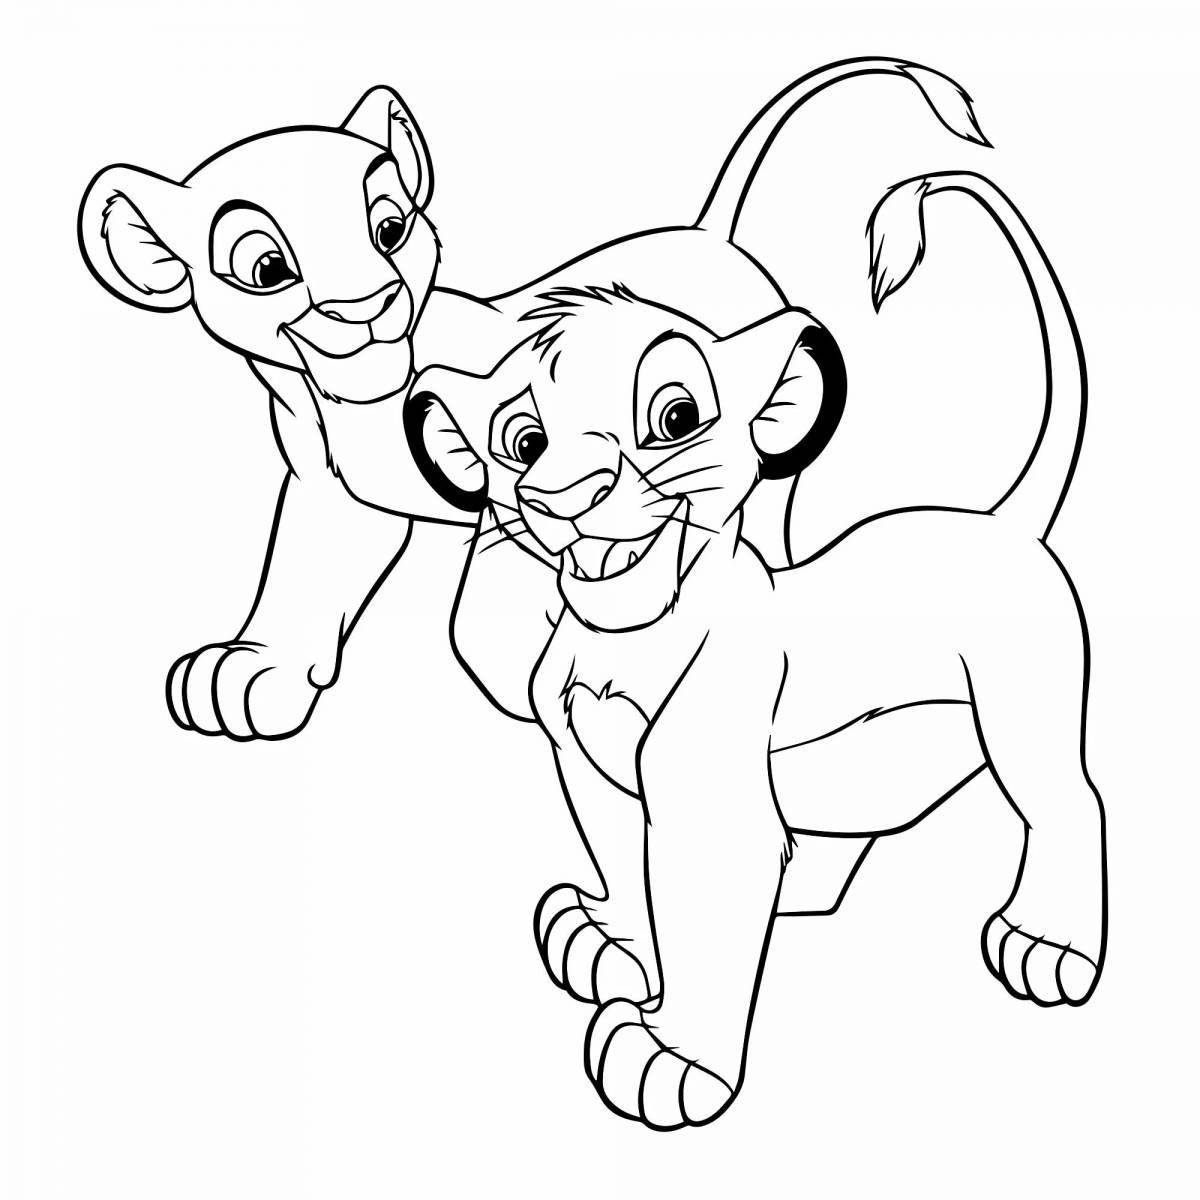 Simba and nala funny coloring book